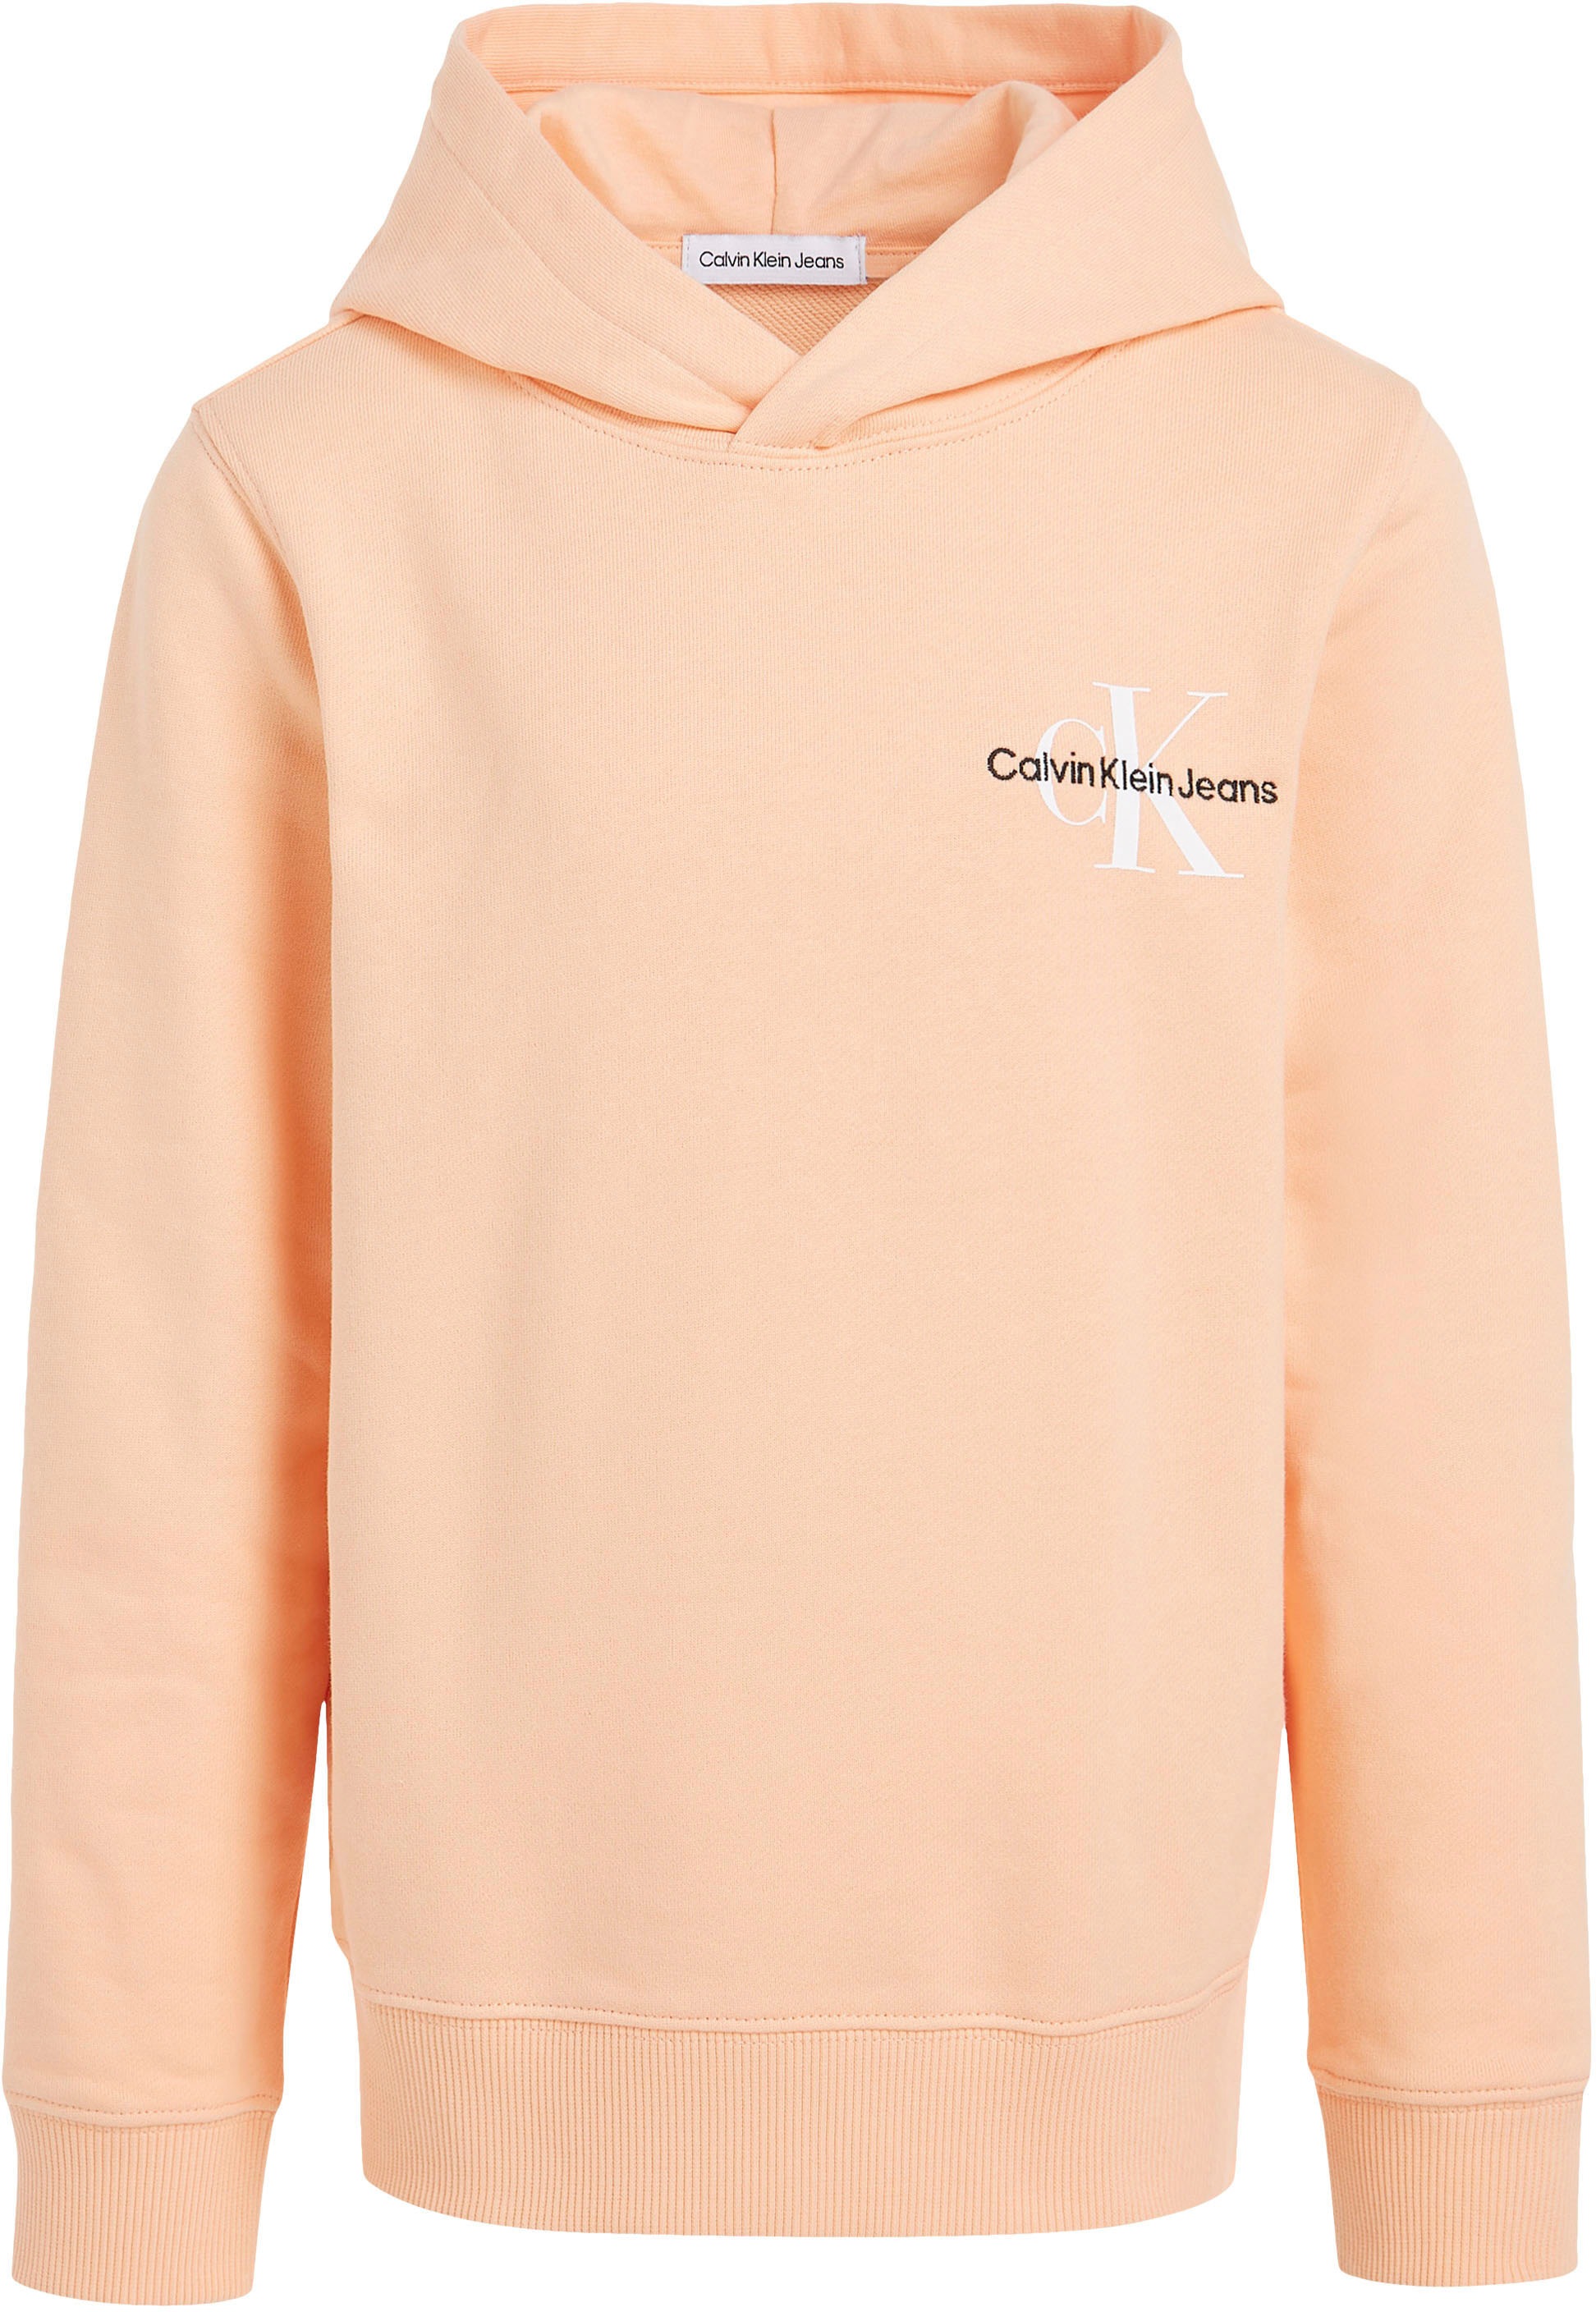 Calvin Klein Jeans Kapuzensweatshirt, Kinder Kids Junior MiniMe,mit Calvin  Klein Logostickerei auf der Brust kaufen